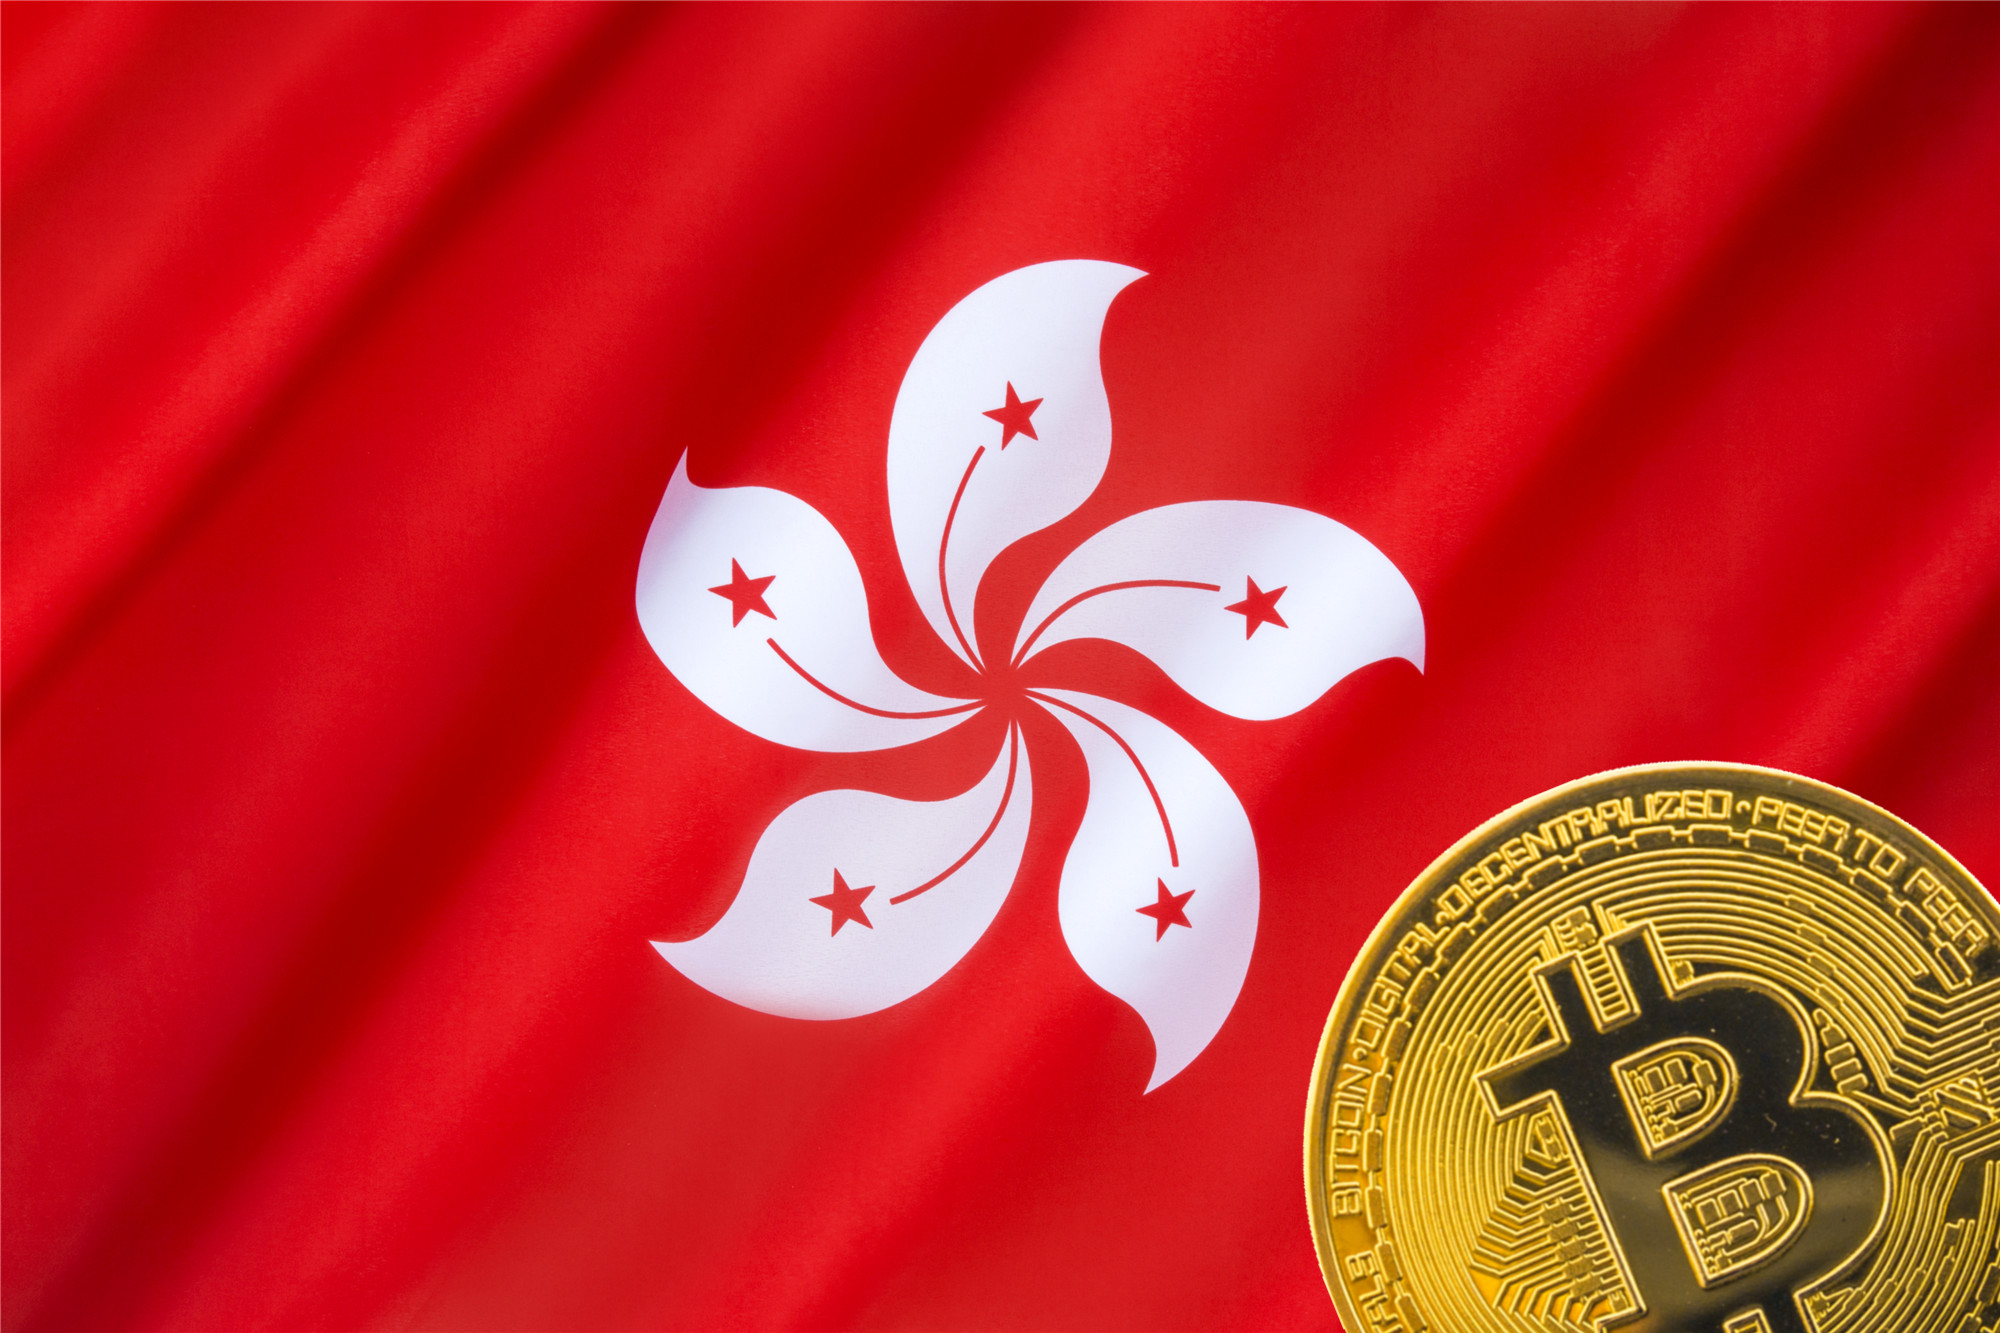 هنگ کنگ آماده ترین حوزه قضایی جهان برای رمزنگاری است: پیشنهاد فارکس